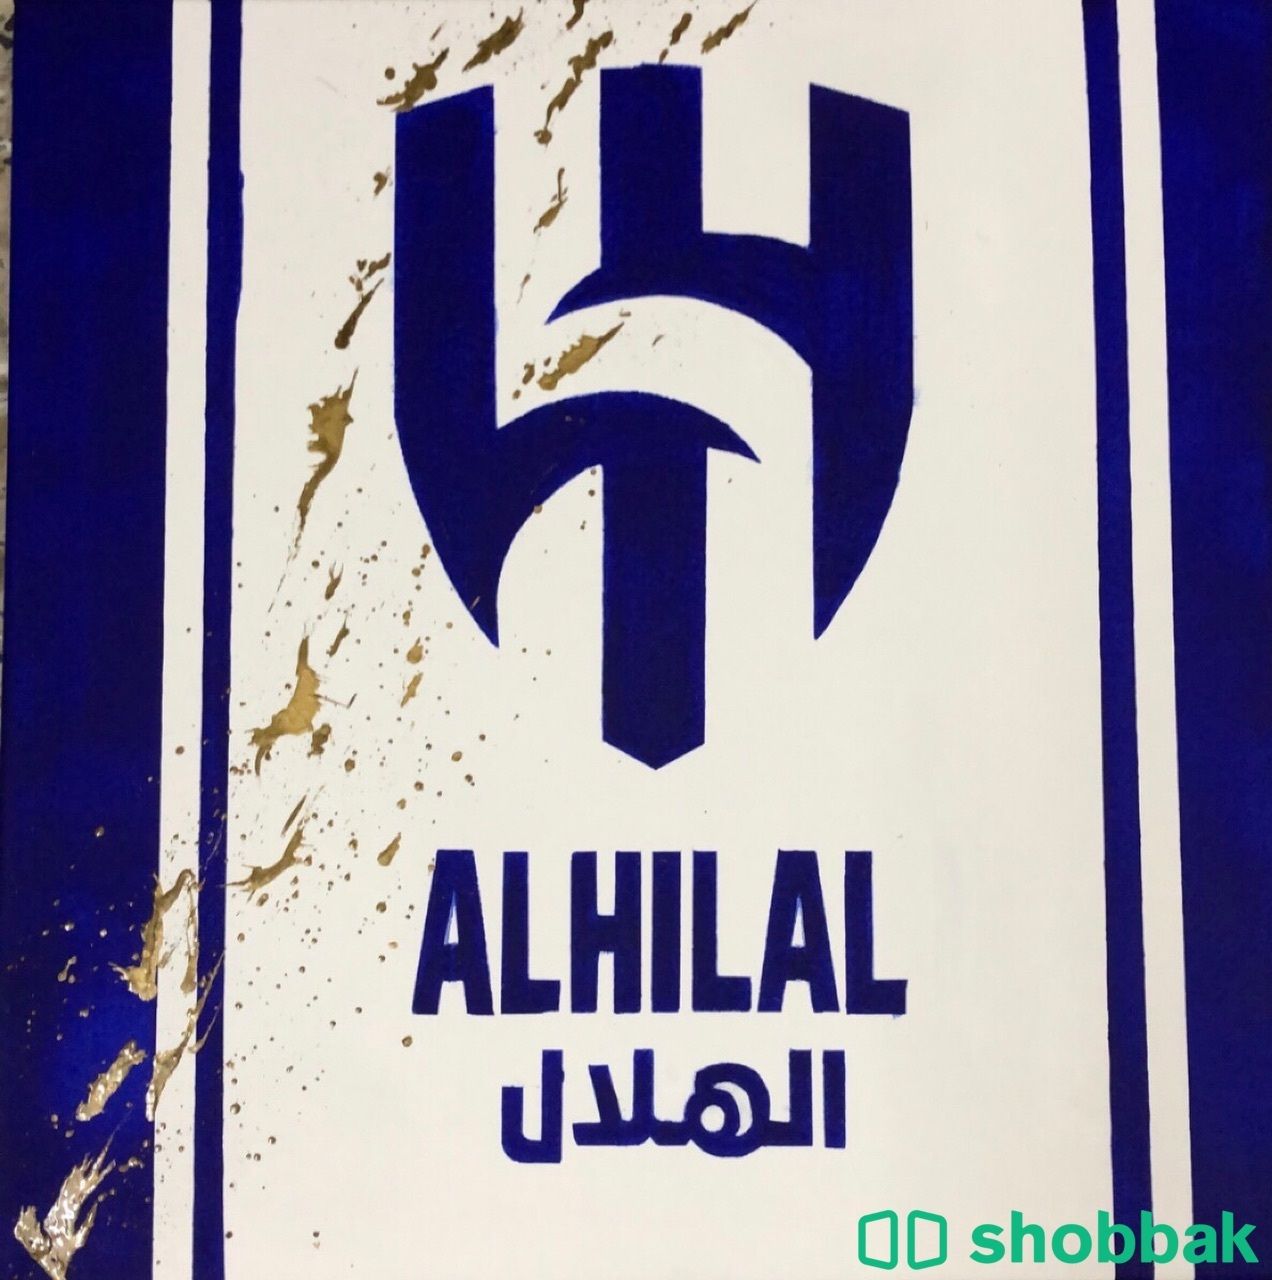 لوحة شعار الهلال Shobbak Saudi Arabia